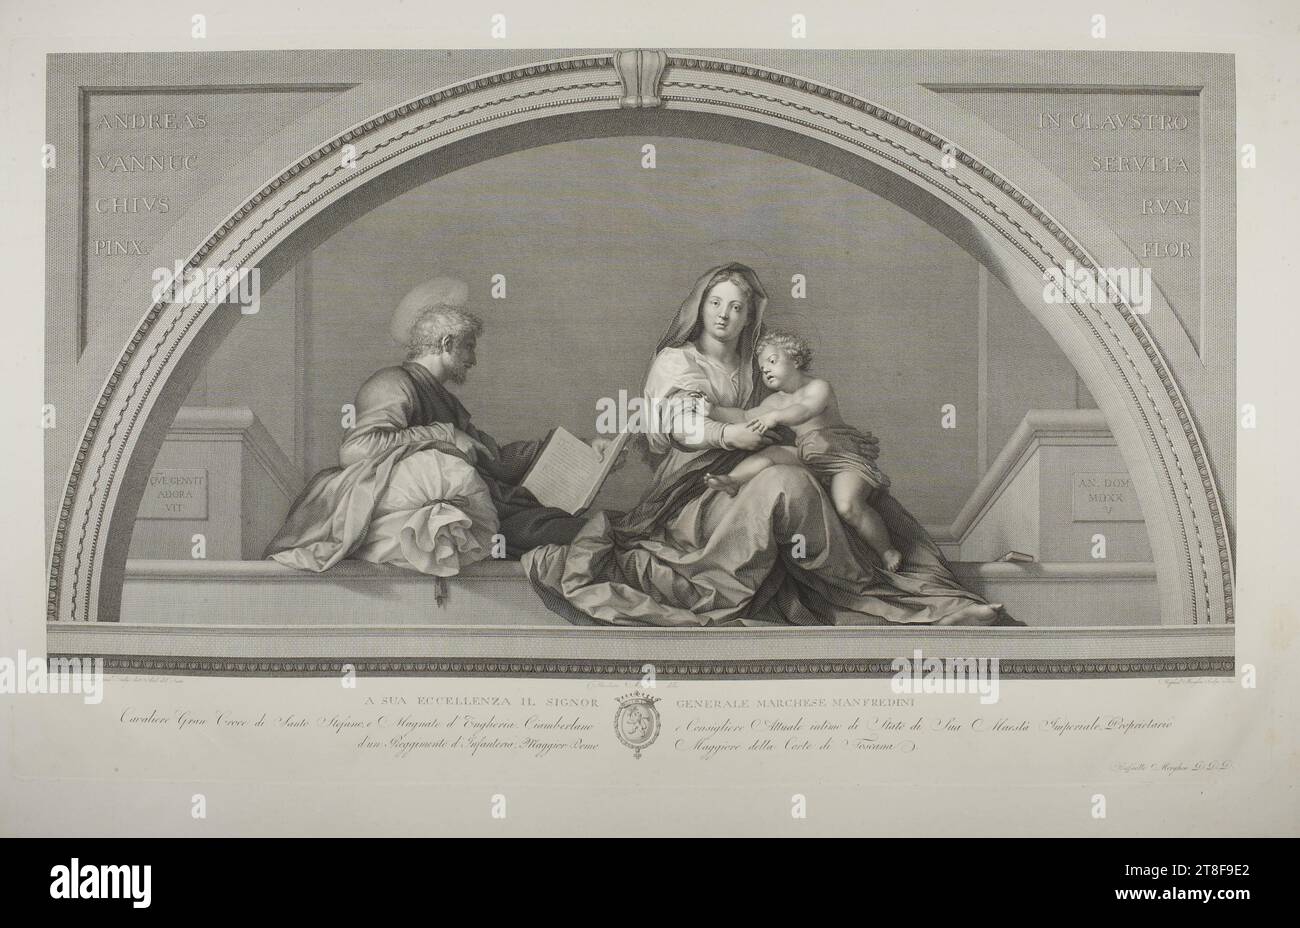 The Holy Family, Raphael Morghen, 1758-1833, No later than 1833, Graphic Art, Copper Engraving, Paper, Color, Printer's ink, Copper engraving, Printet, Height (plate size) 460 mm, Height (paper size) 570 mm, Width (plate size) 775 mm, Width (paper size) 885 mm, ANDREAS VANNUC, HINIVS, PINX., IN CLAVSTRO, SERVITO, RVM, FLOR, QVE GENVIT, ADORA, VIT, AN. DOM, MDXX, V, Andreas Vannucchuis pinx.t: vulgo dicto And. del Sarto, Theodore Matteini delin, Raphael Morghen Sculp: Flor:, A SUA ECCELLENZA IL SIGNOR GENERALE MARCHESE MANFREDINI, Cavaliere Gran Croce di Santo Stefane Stock Photo